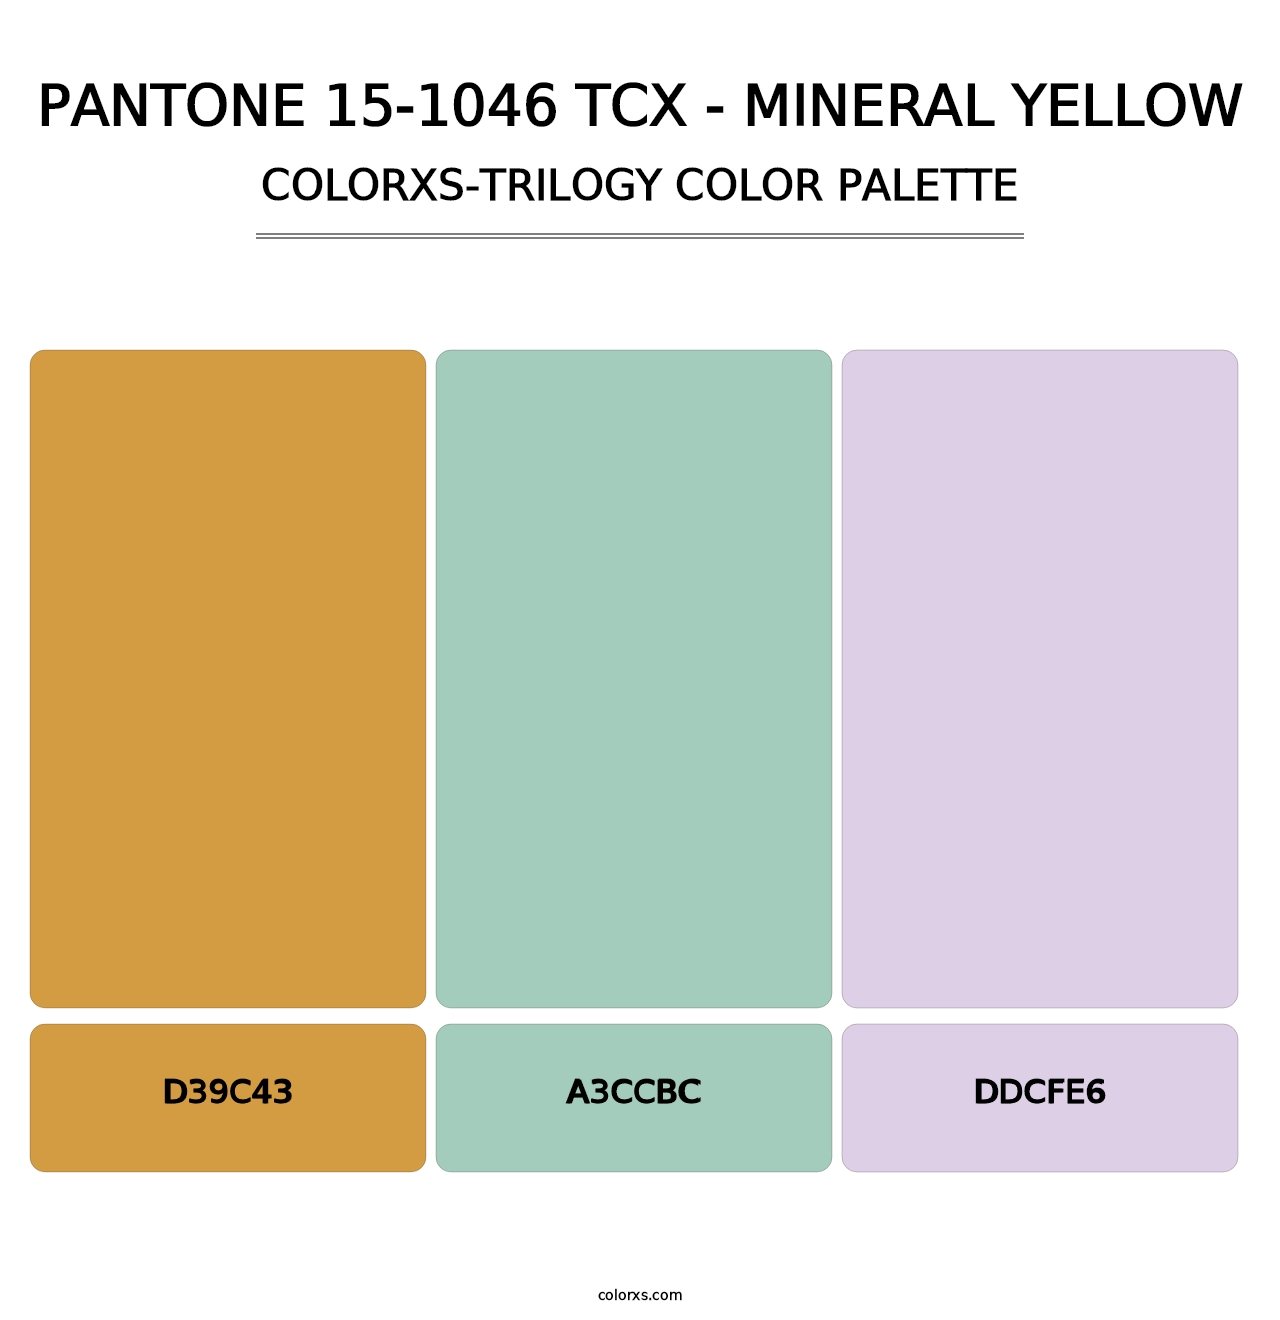 PANTONE 15-1046 TCX - Mineral Yellow - Colorxs Trilogy Palette